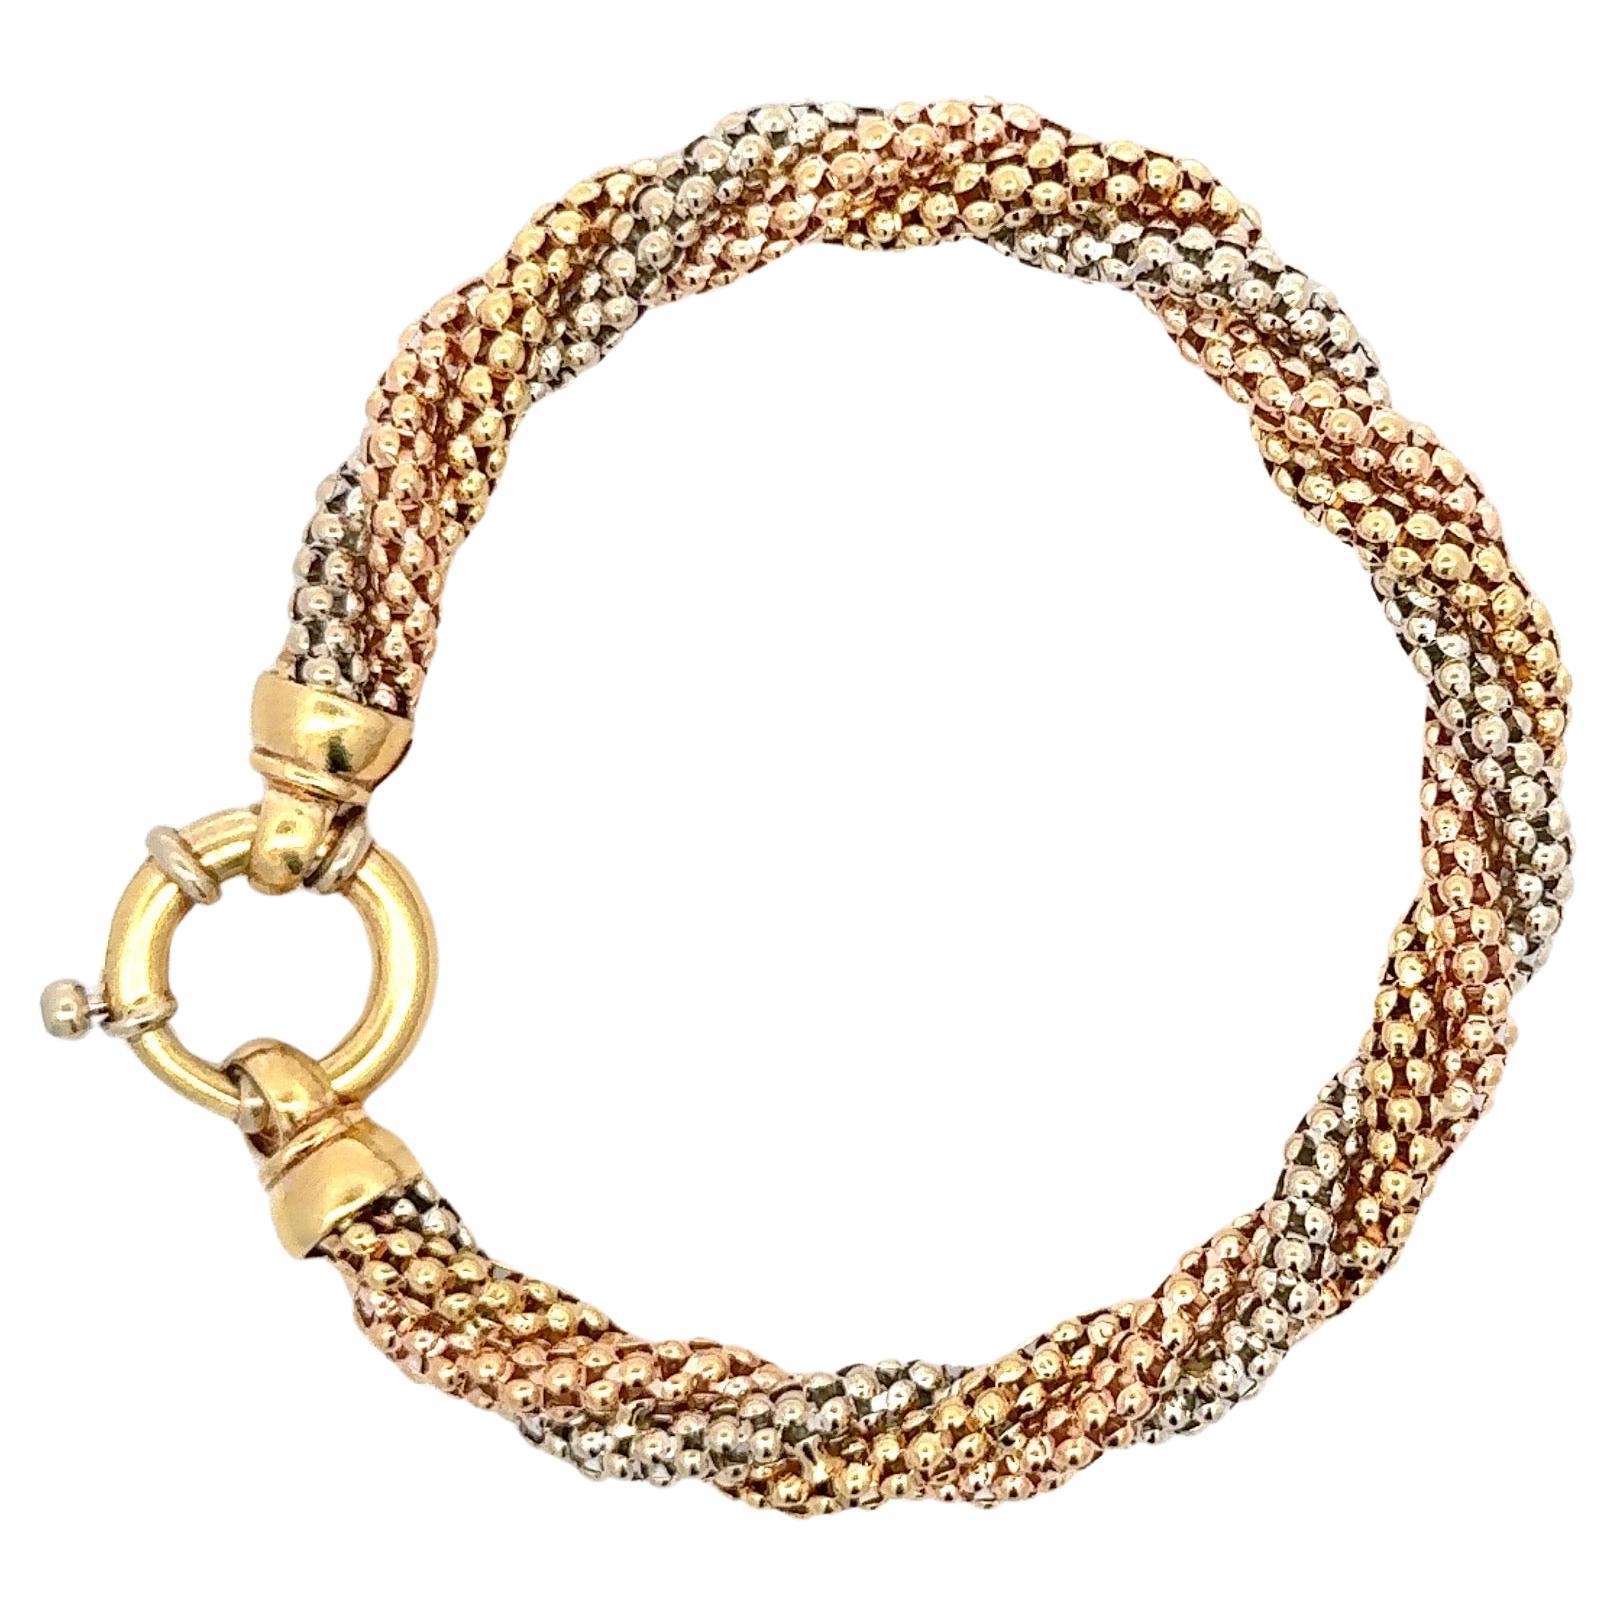 Armband aus 18 Karat Rosé-, Weiß- und Gelbgold mit einem Perlenmotiv und einem Gewicht von 23 Gramm.

